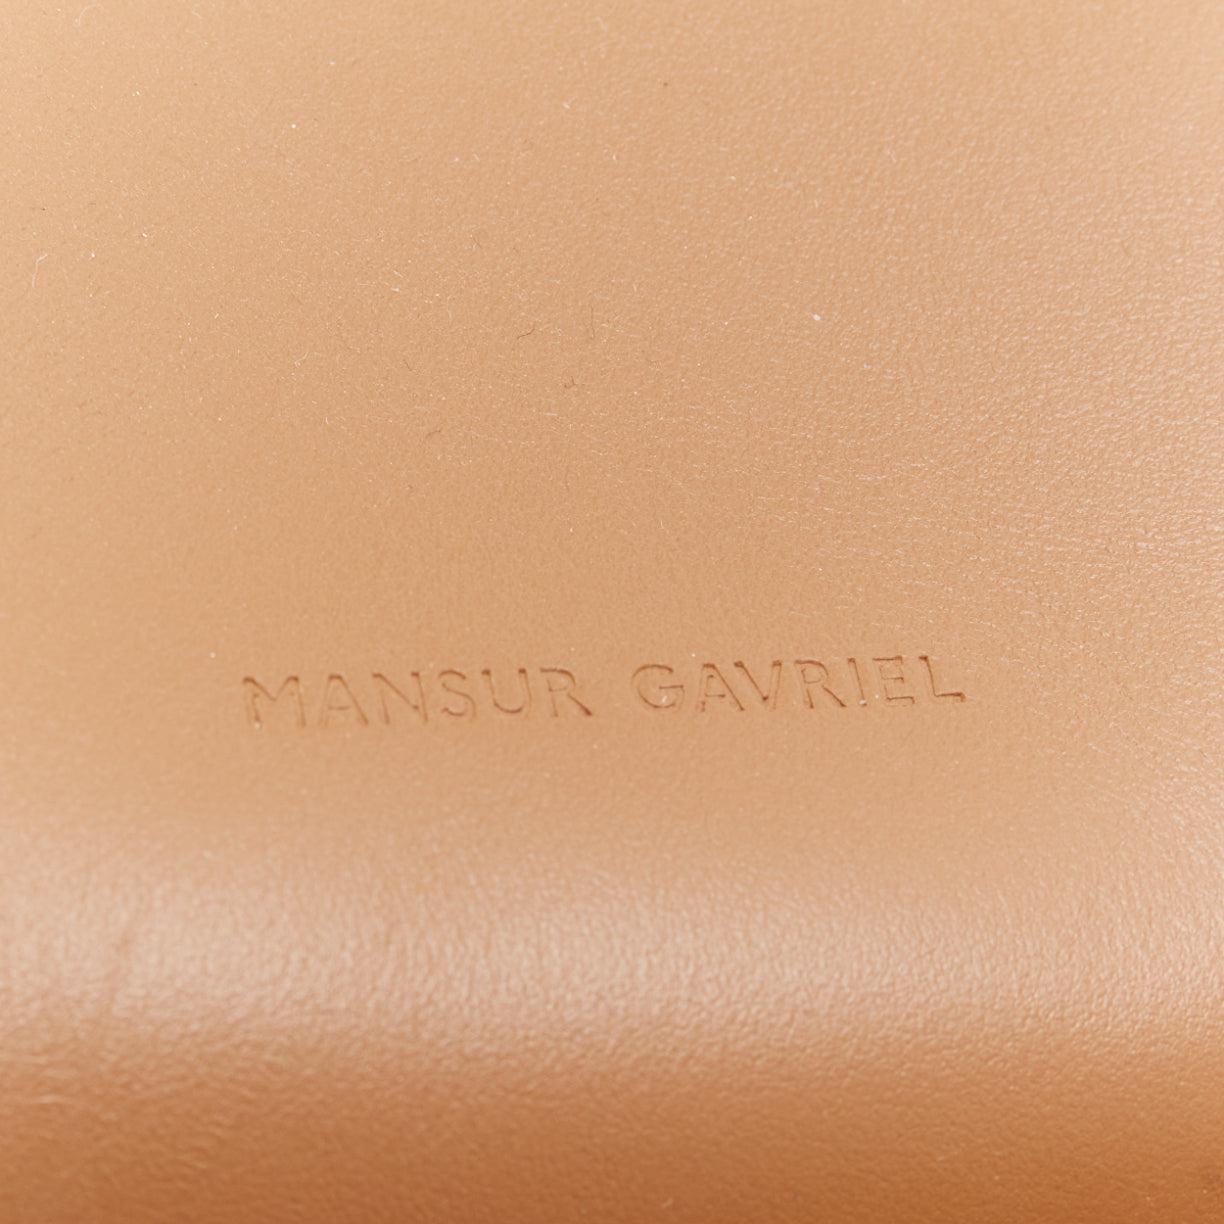 MANSUR GAVRIEL vegetable tanned calfskin leather minimal classic backpack bag 2